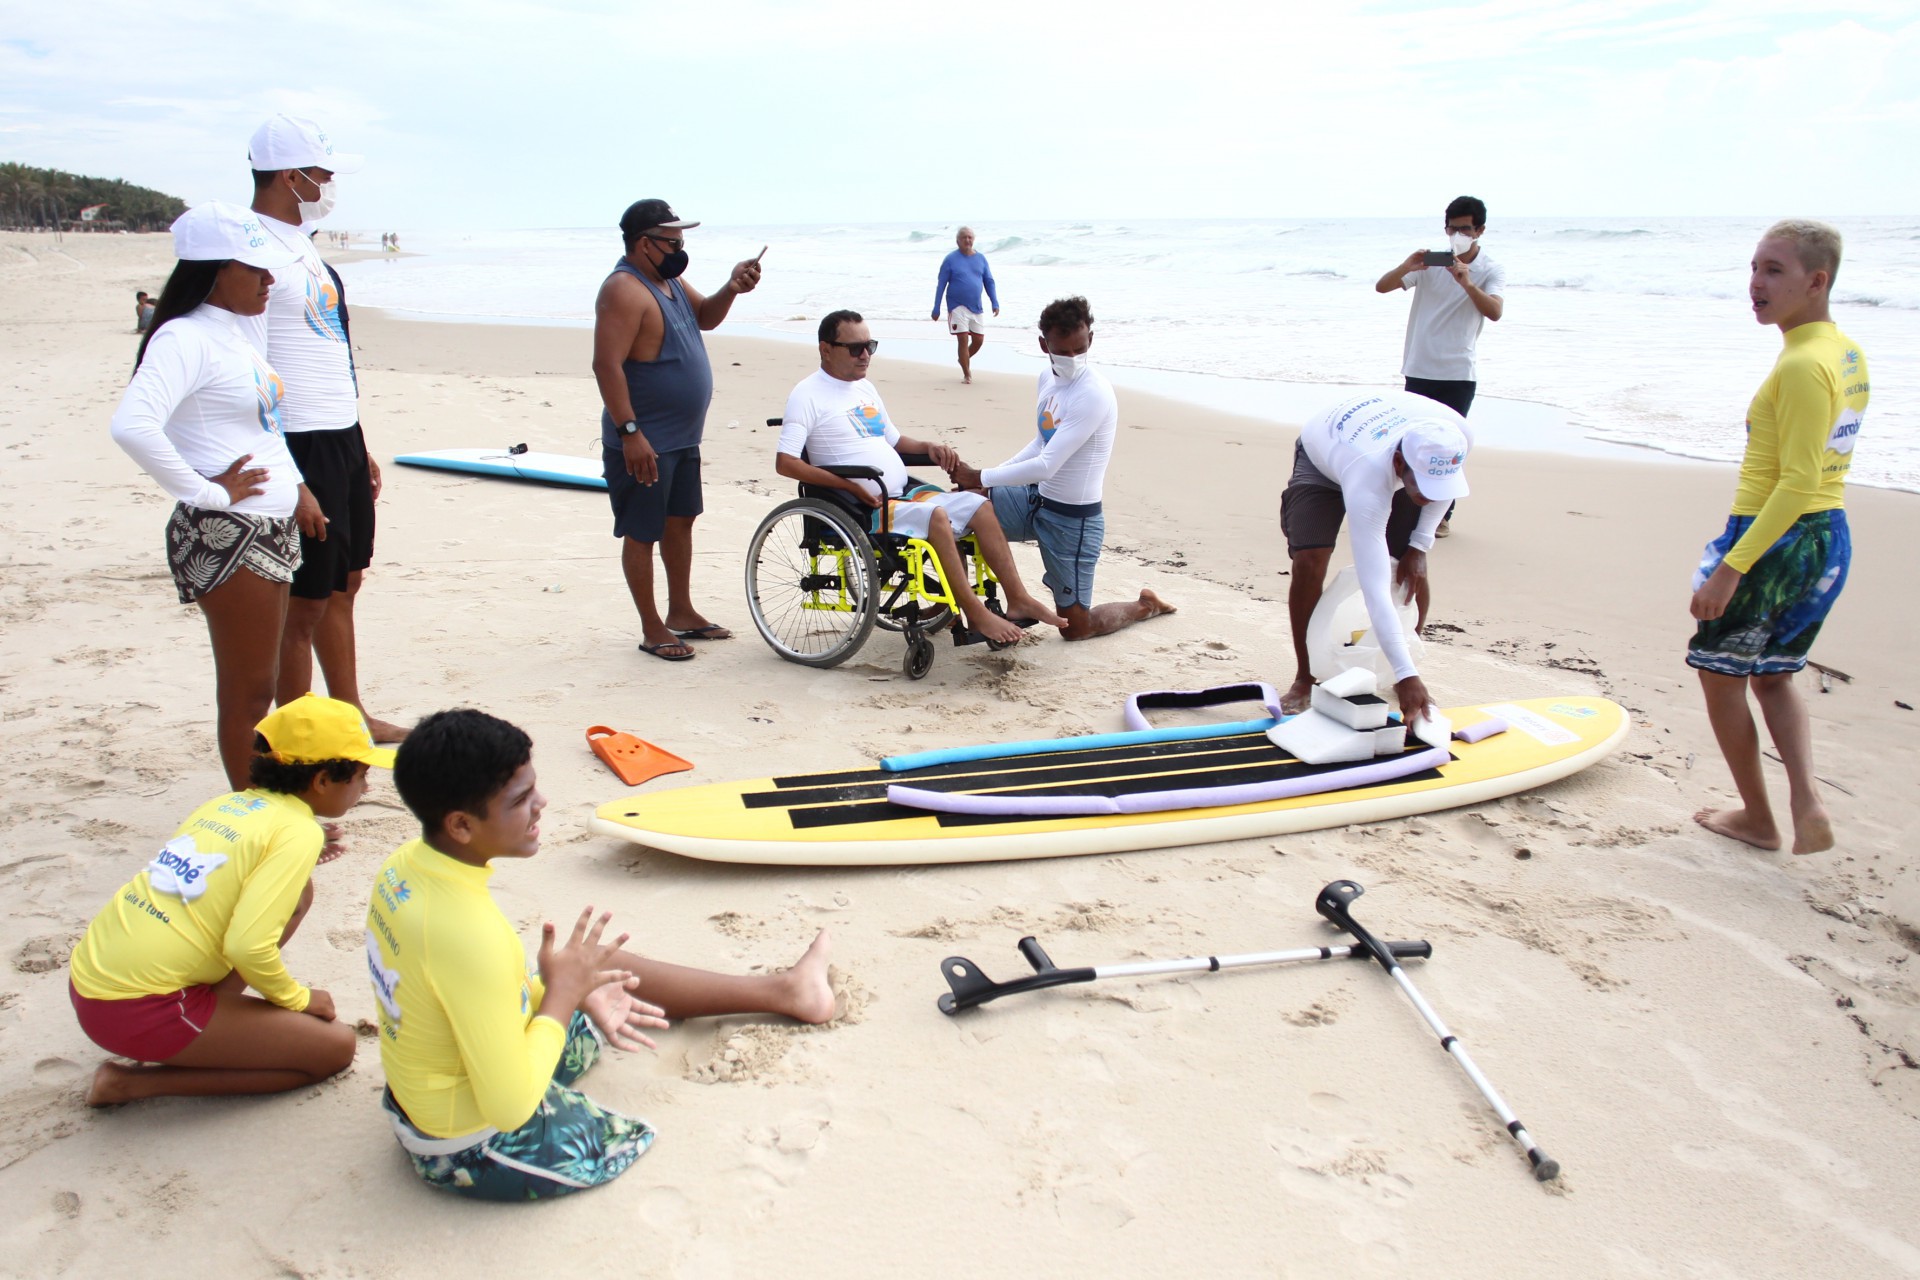  INSTITUTO Povo do Mar (IPOM) inclui jovens com algum tipo de deficiência
 (Foto: FABIO LIMA)